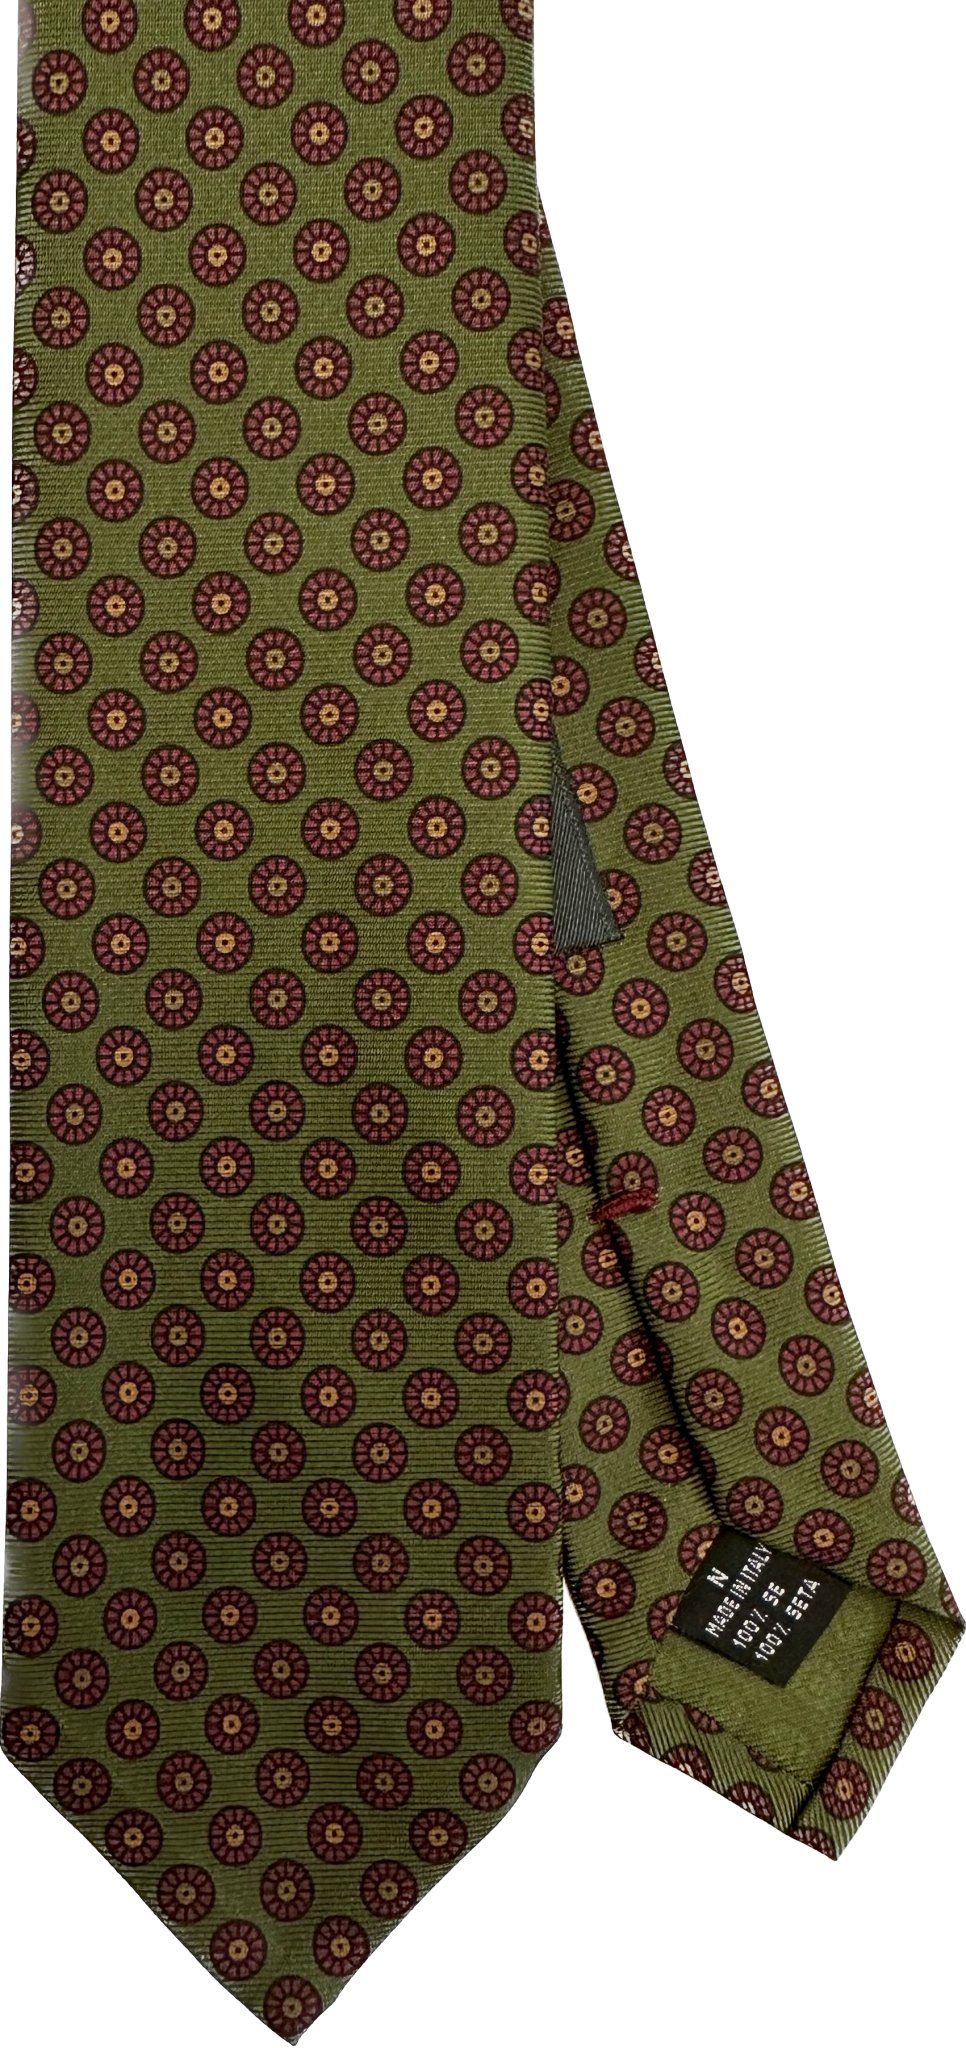 Cravatta seta micro fiore verde archivio Monsieur - MONSIEUR